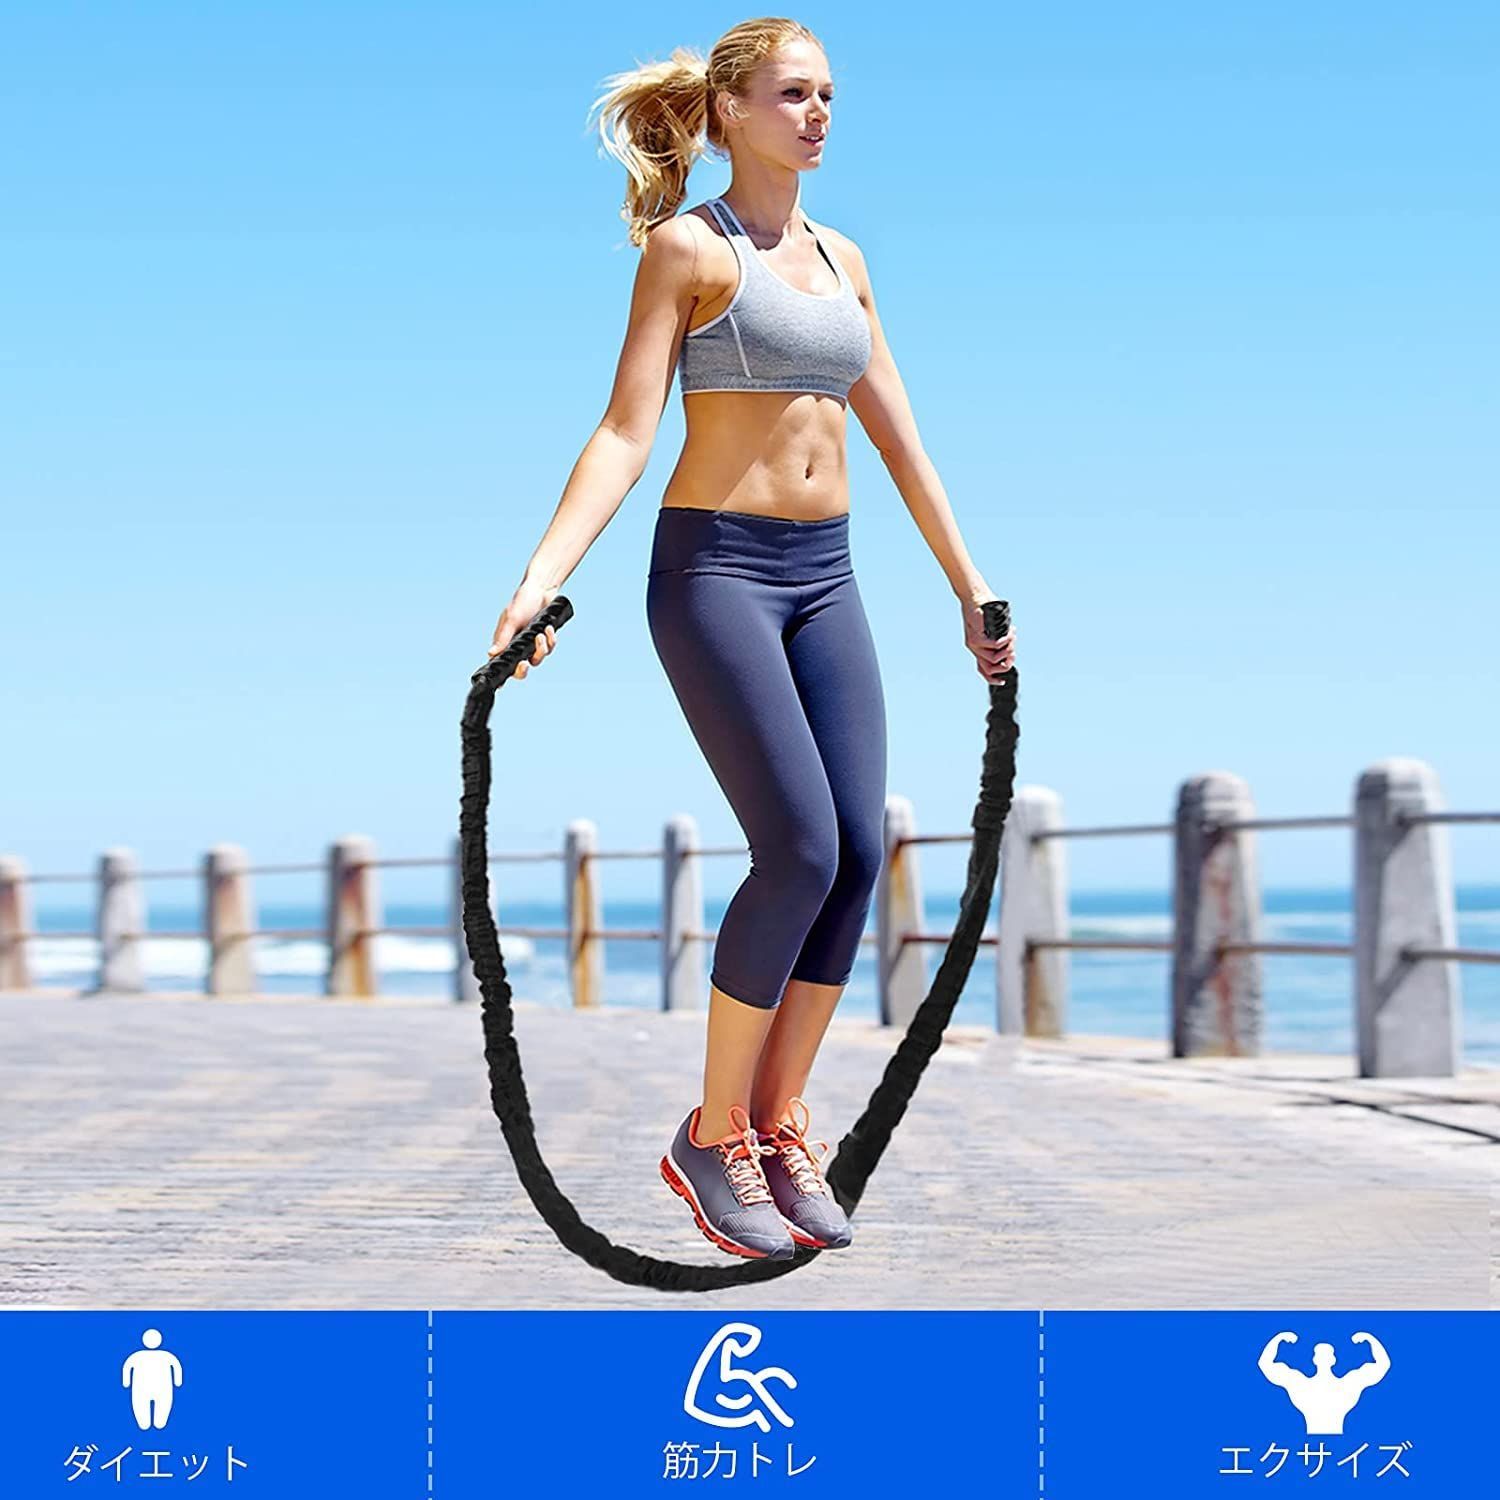 縄跳び トレーニング用 大人用 ジムロープ 重い なわとび ダイエット トレーニングロープ( ブラック)